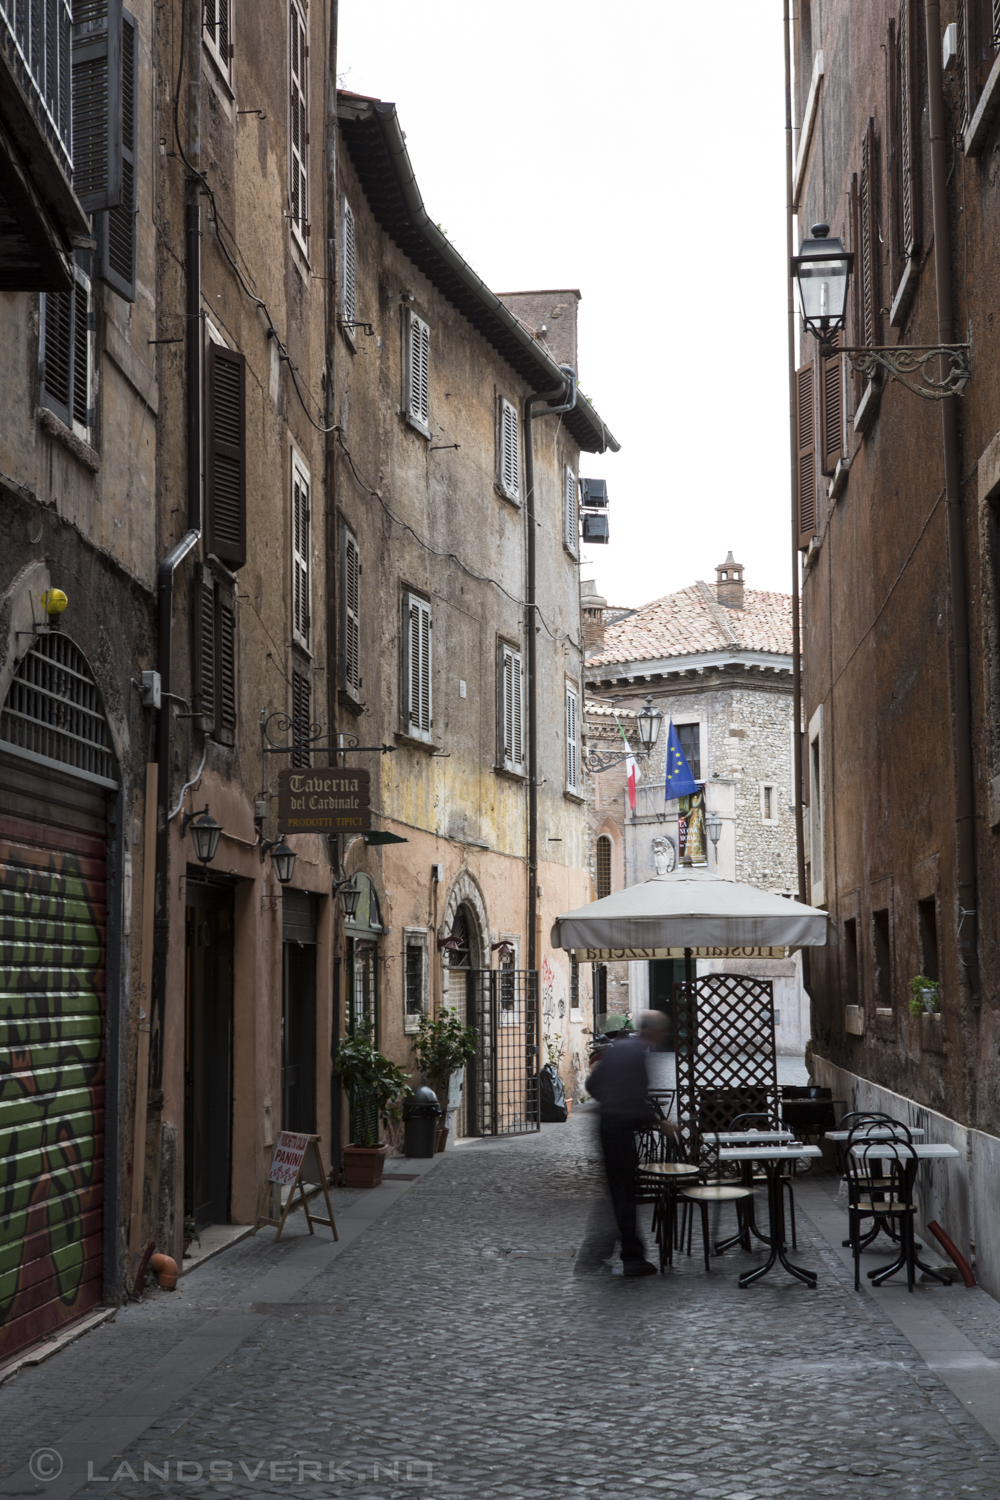 Tivoli, Italy. 

(Canon EOS 5D Mark III / Canon EF 24-70mm f/2.8 L USM)